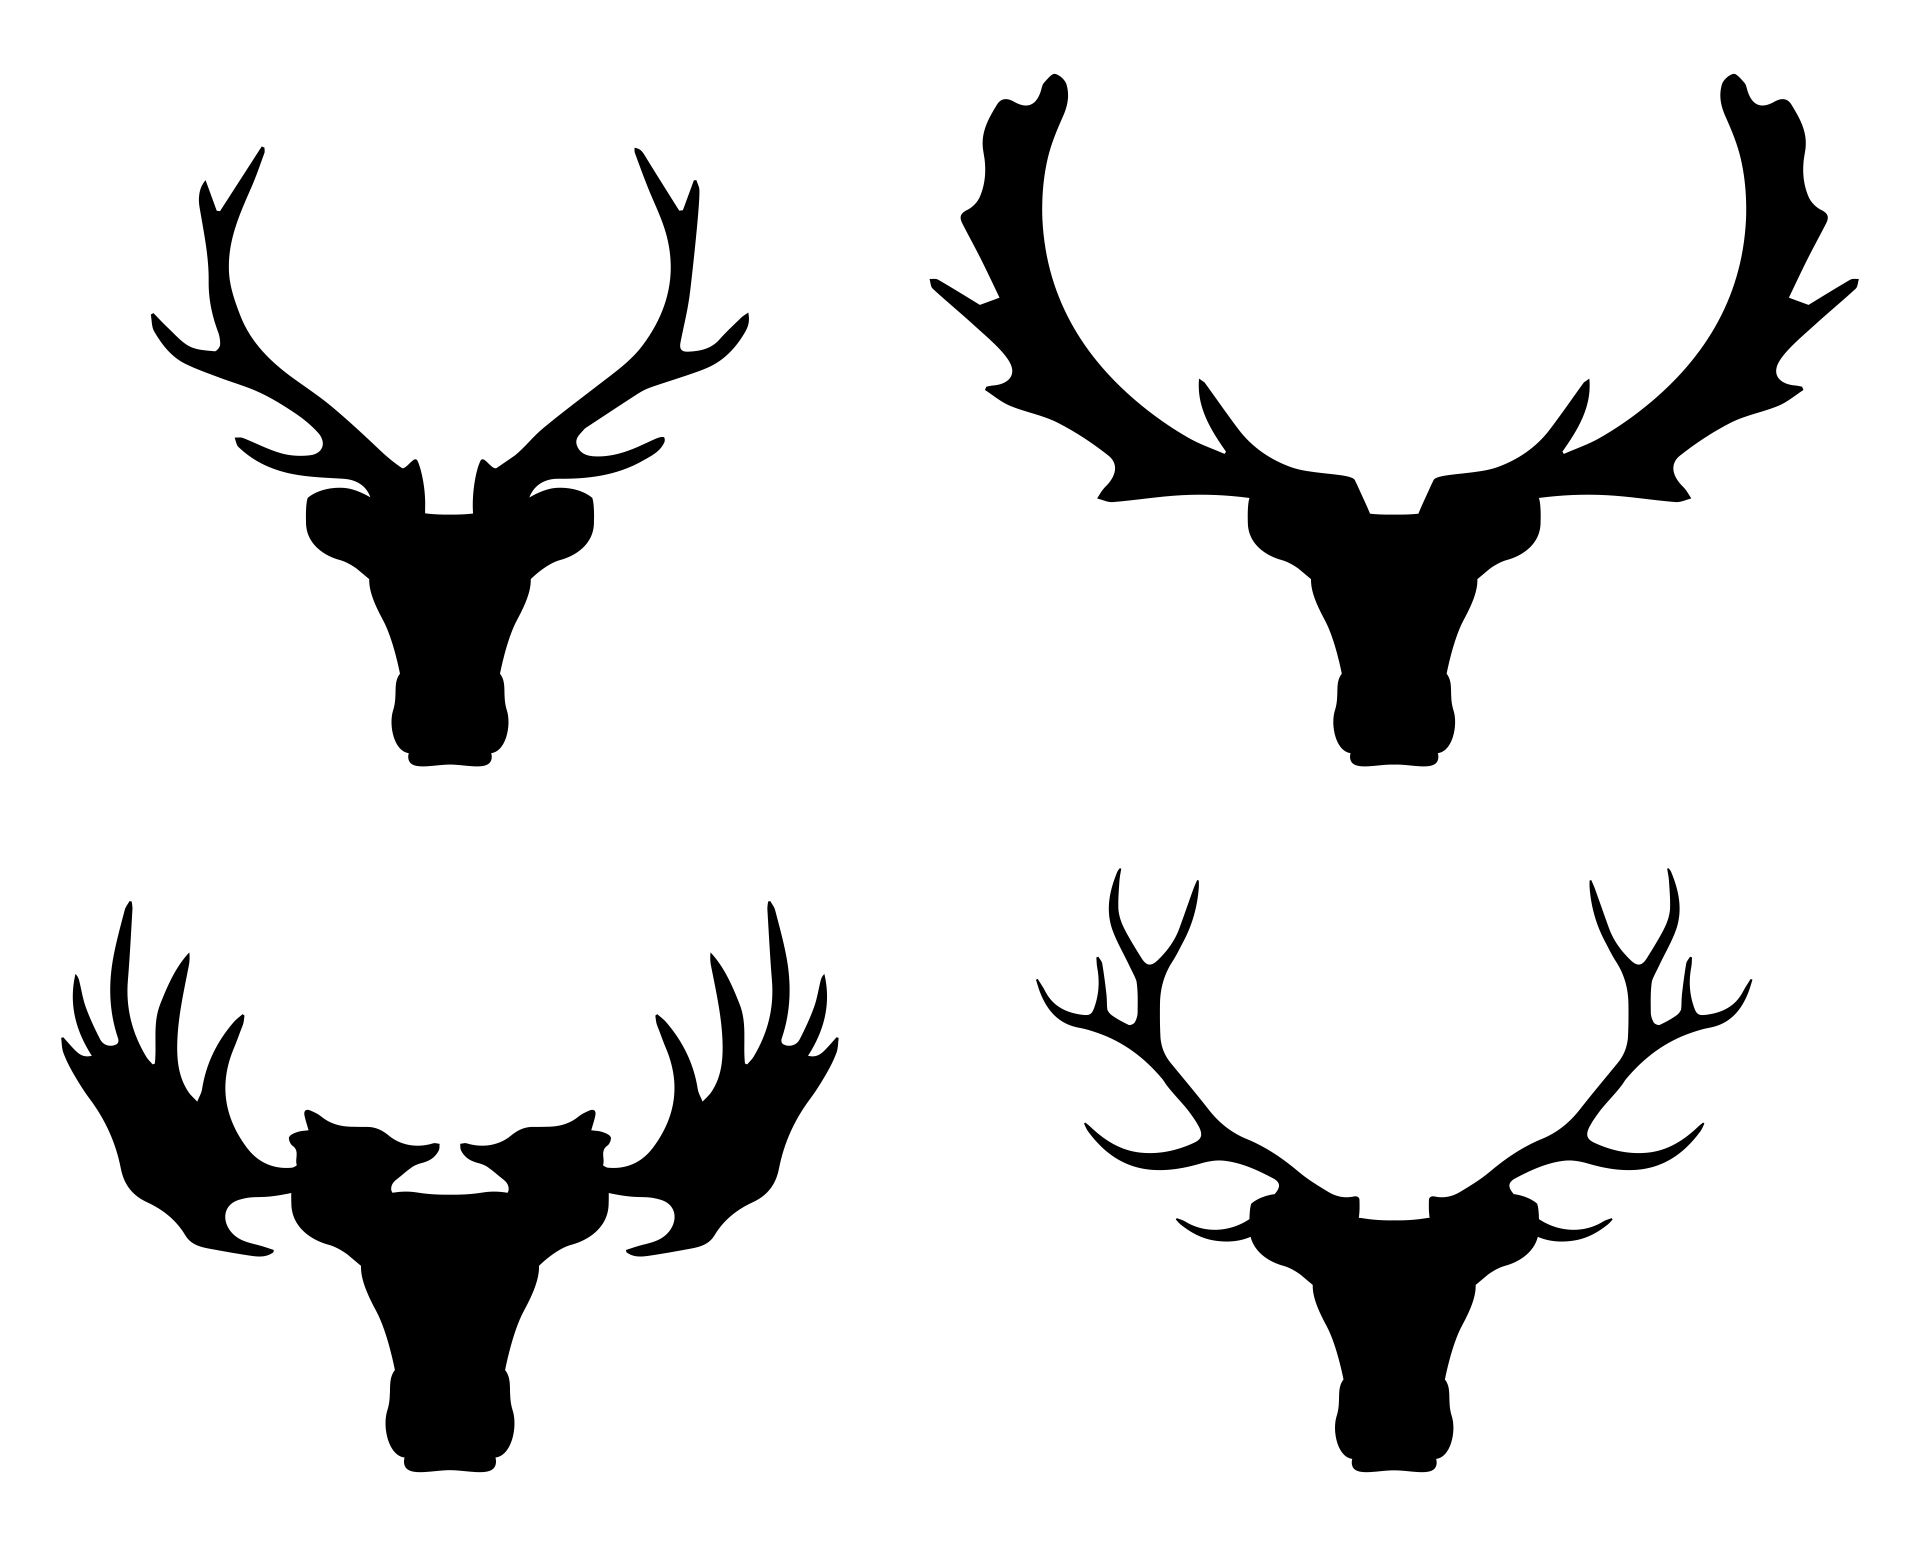 4-best-images-of-printable-deer-stencils-deer-head-template-printable-deer-pumpkin-carving